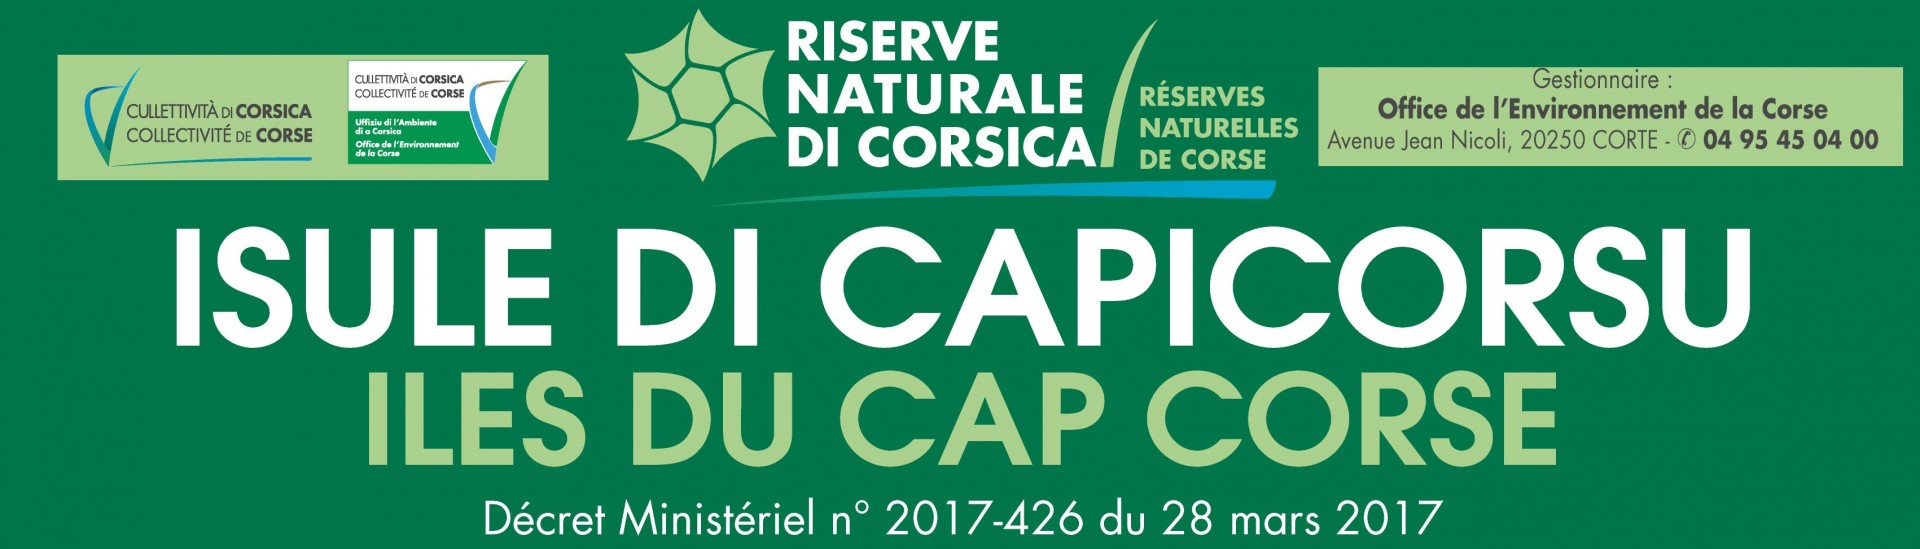 Réserve Naturelle des îles du Cap Corse - Photo OEC©